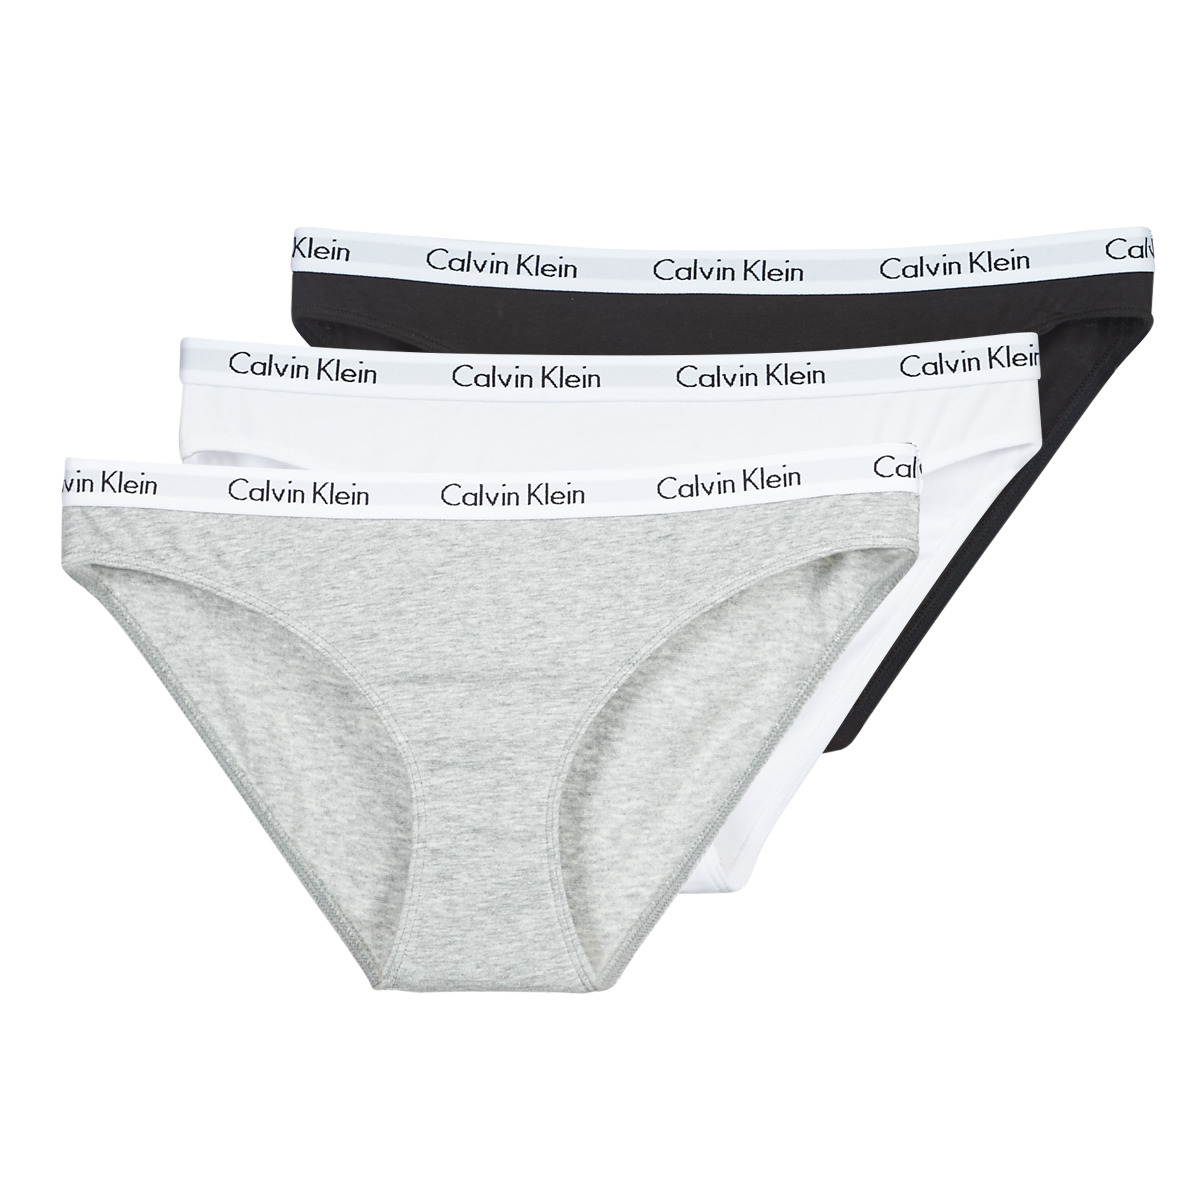 Calvin Klein Jeans CAROUSEL BIKINI X 3 Nero / Bianco / Grigio / Chiné -  Consegna gratuita | Spartoo.it ! - Biancheria Intima Culotte e slip Donna  40,00 €